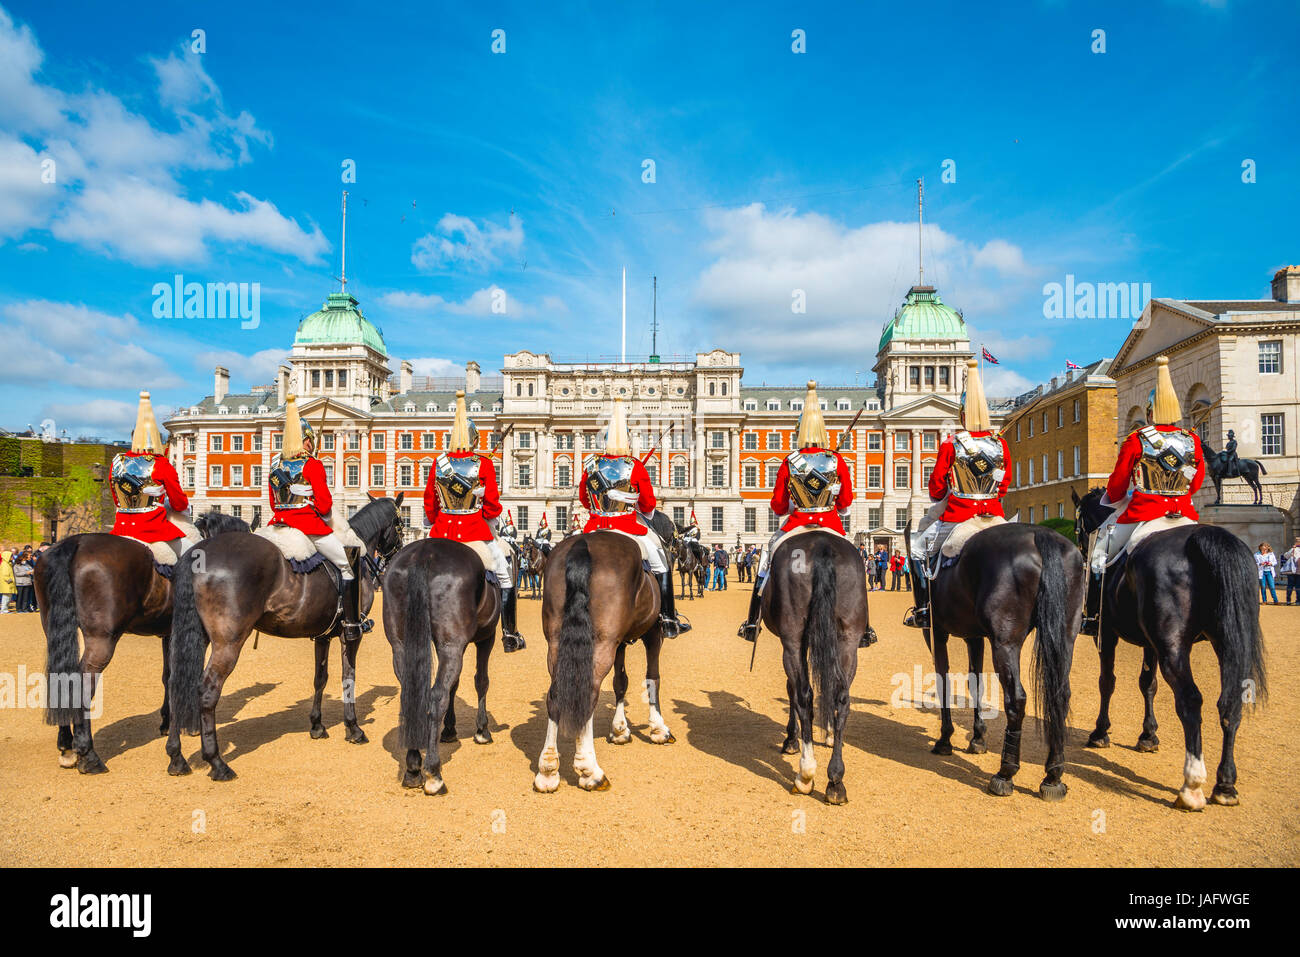 La Garde Royale en uniforme rouge sur les chevaux, les Sauveteurs, Household Cavalry régiment monté, Horse Guards Parade Banque D'Images